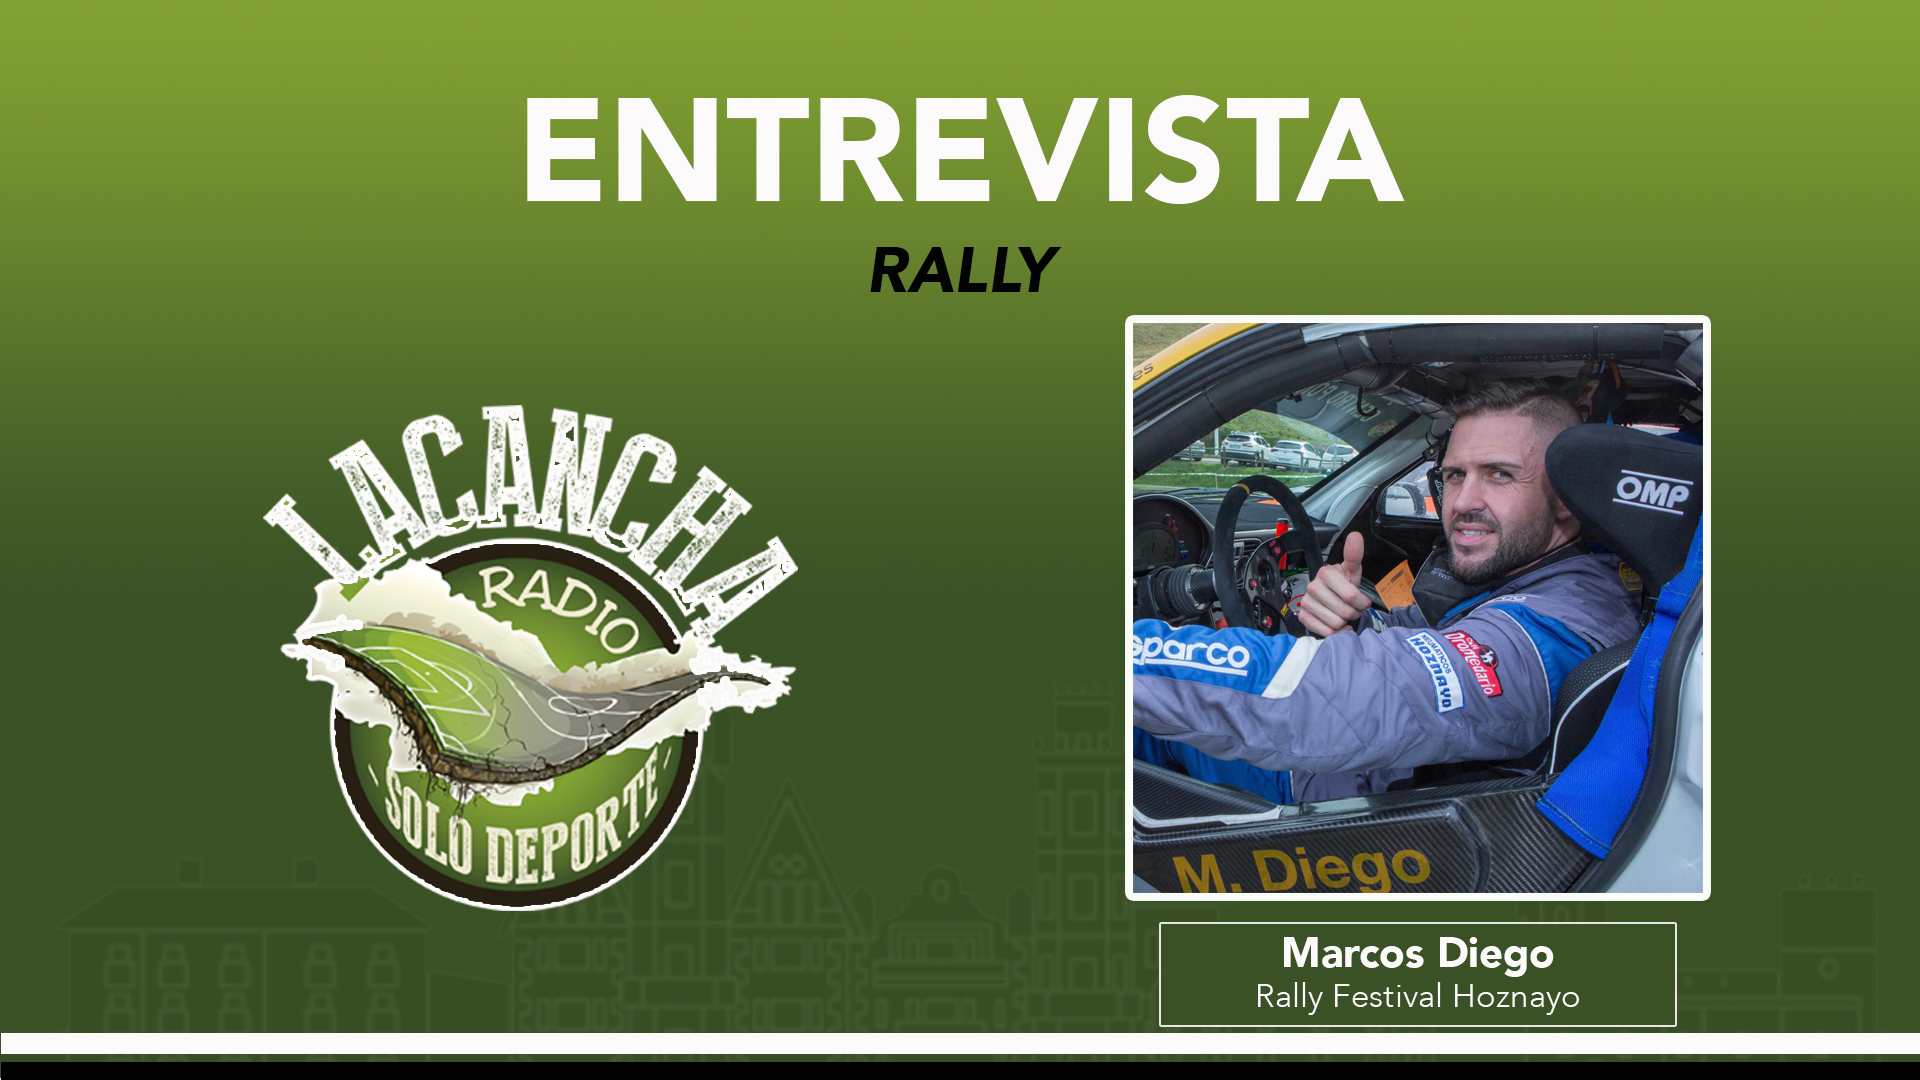 Entrevista con Marcos Diego, organizador del Rally Festival Hoznayo (18/05/2022)